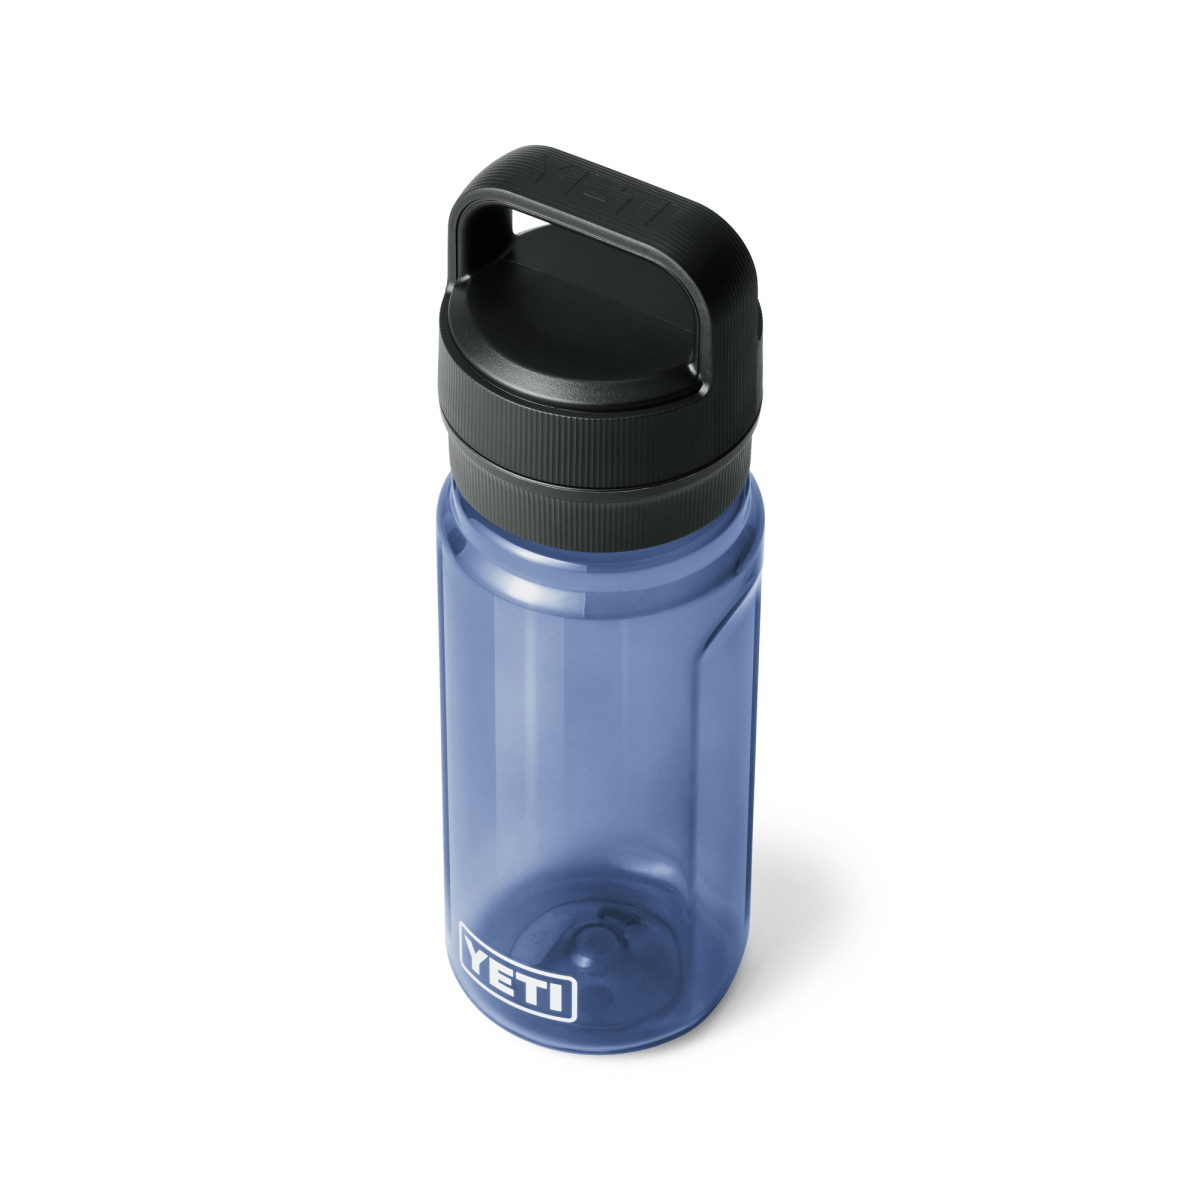 YETI Yonder 20 oz Water Bottle Review